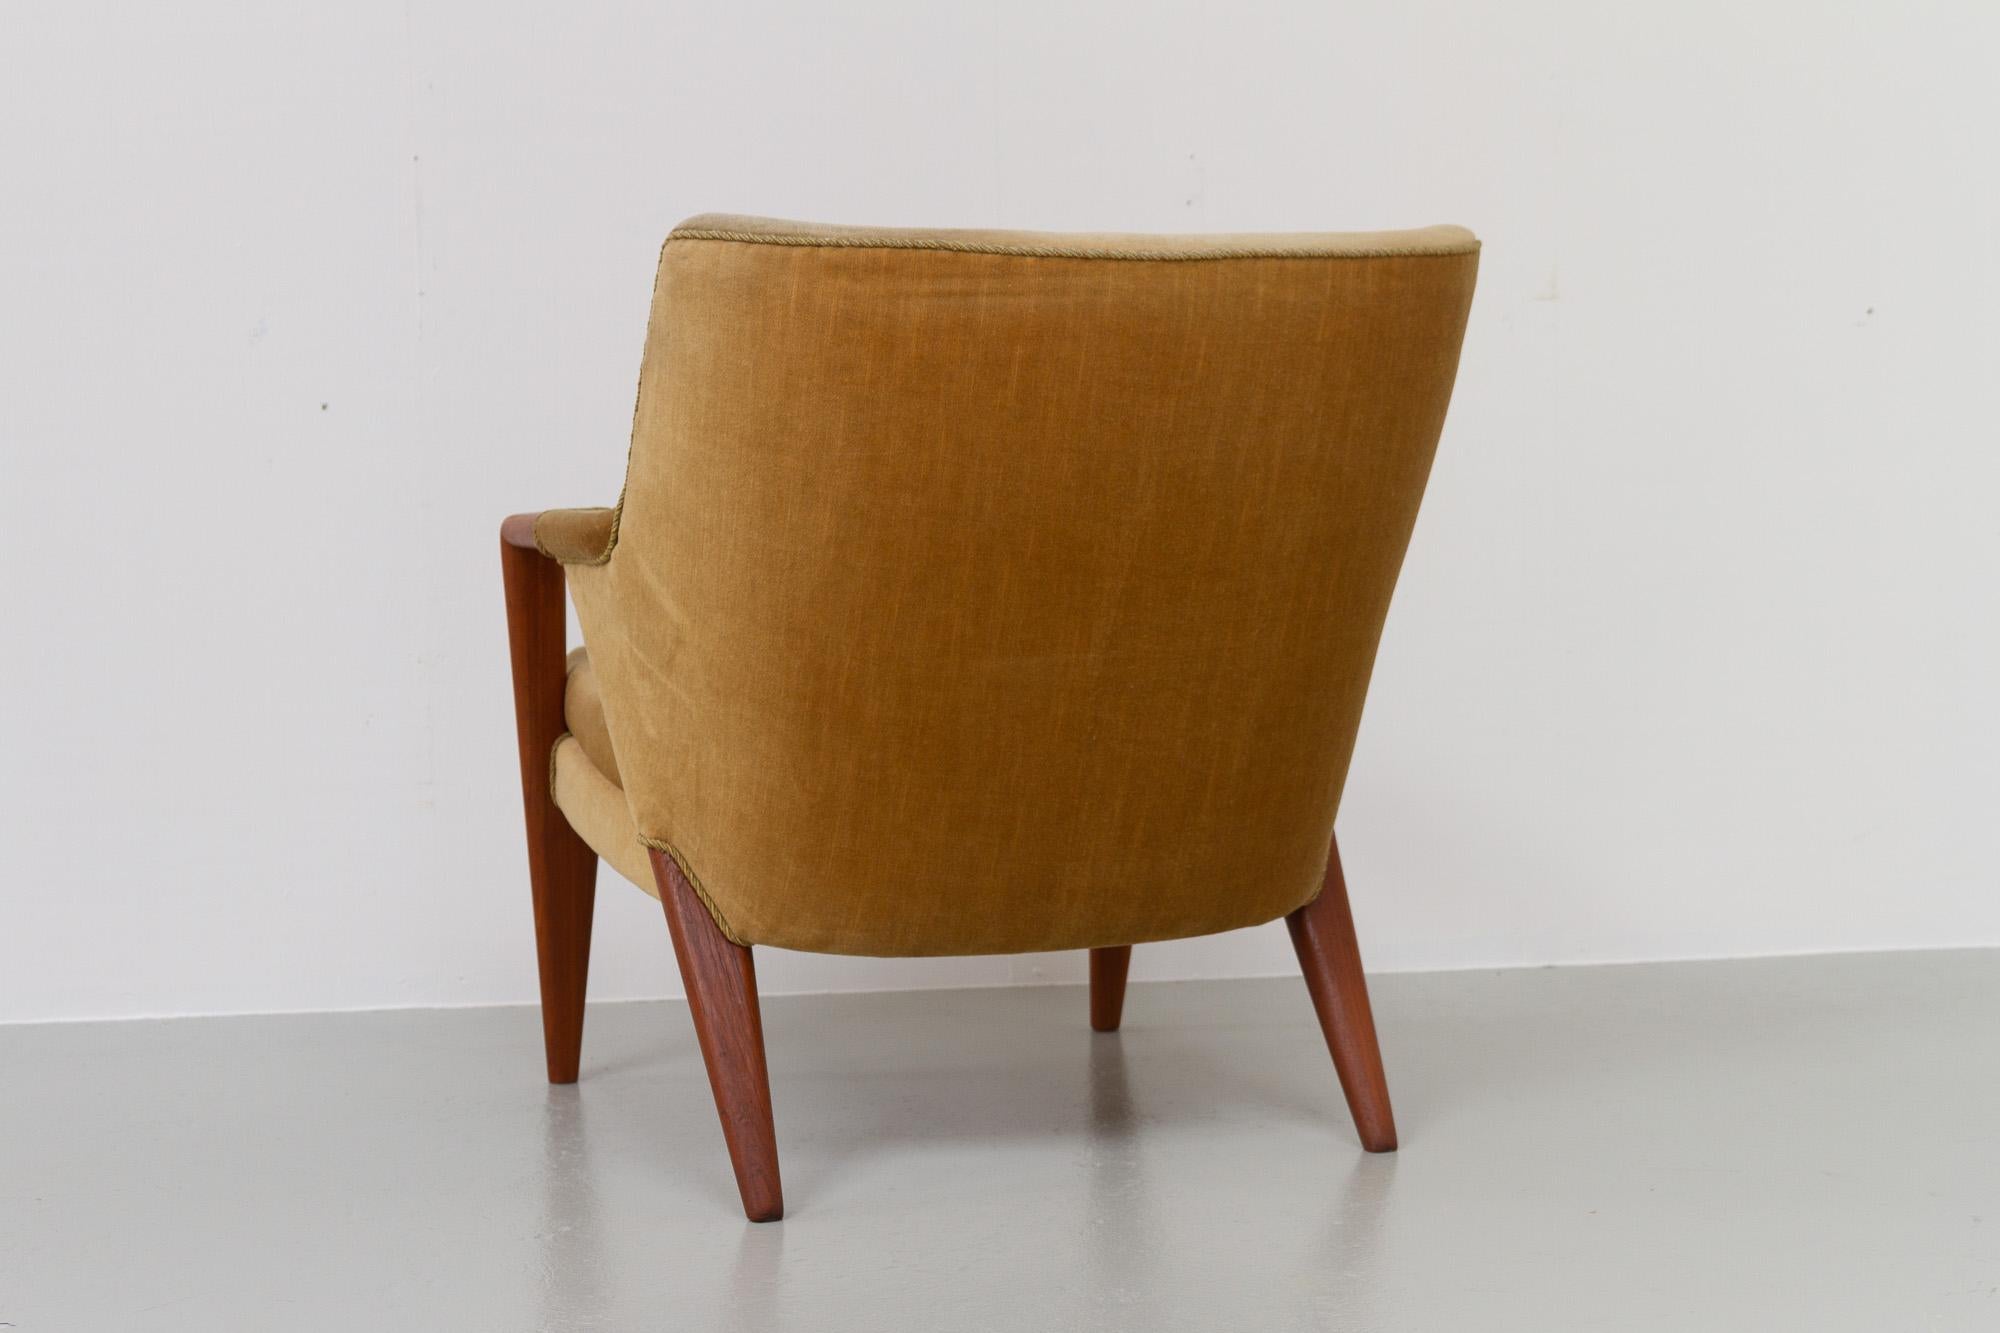 Danish Modern Banana Sofa and Chair by Kurt Olsen for Slagelse Møbelværk, 1950s For Sale 3